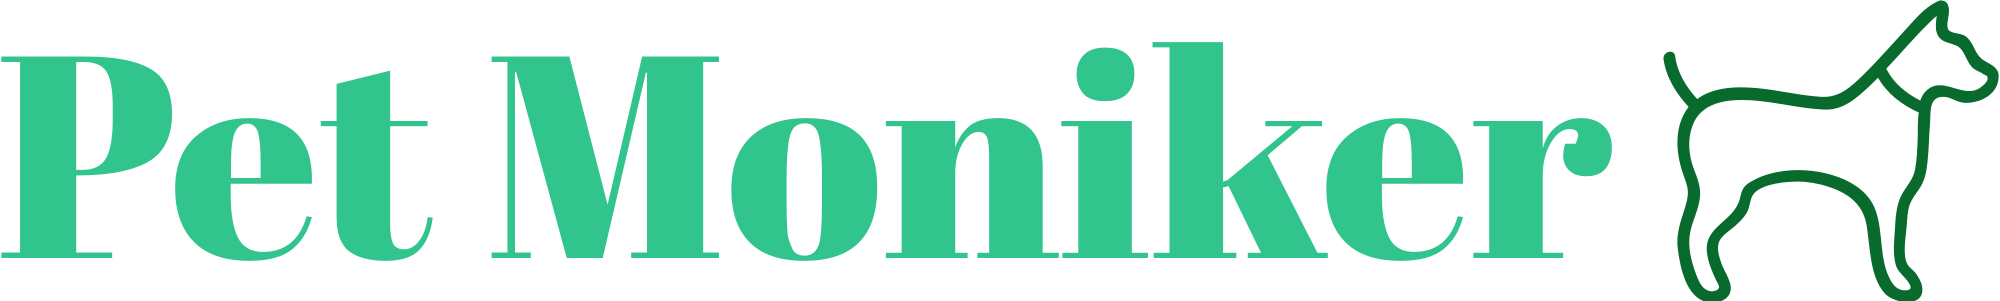 pet-moniker-high-resolution-logo